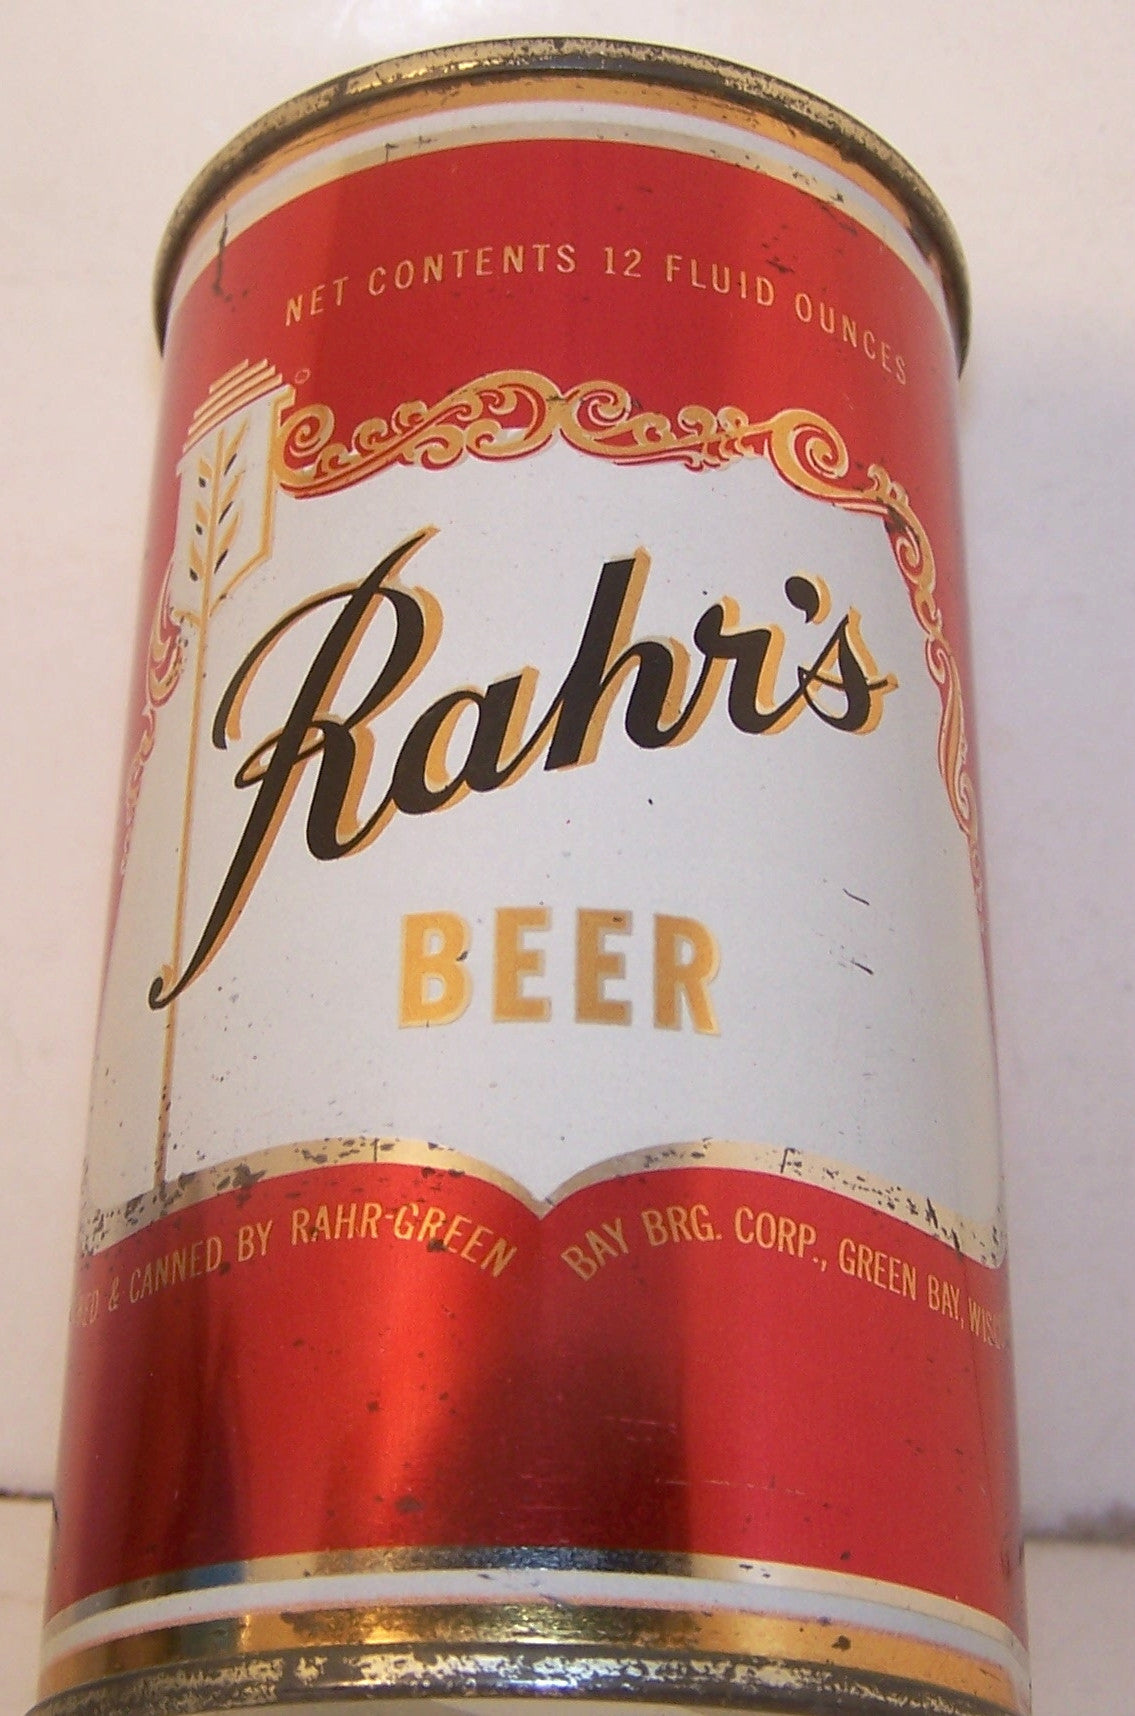 Rahr's Beer (Black Letter) USBC 117-19, Grade 1 sold 5/3/15